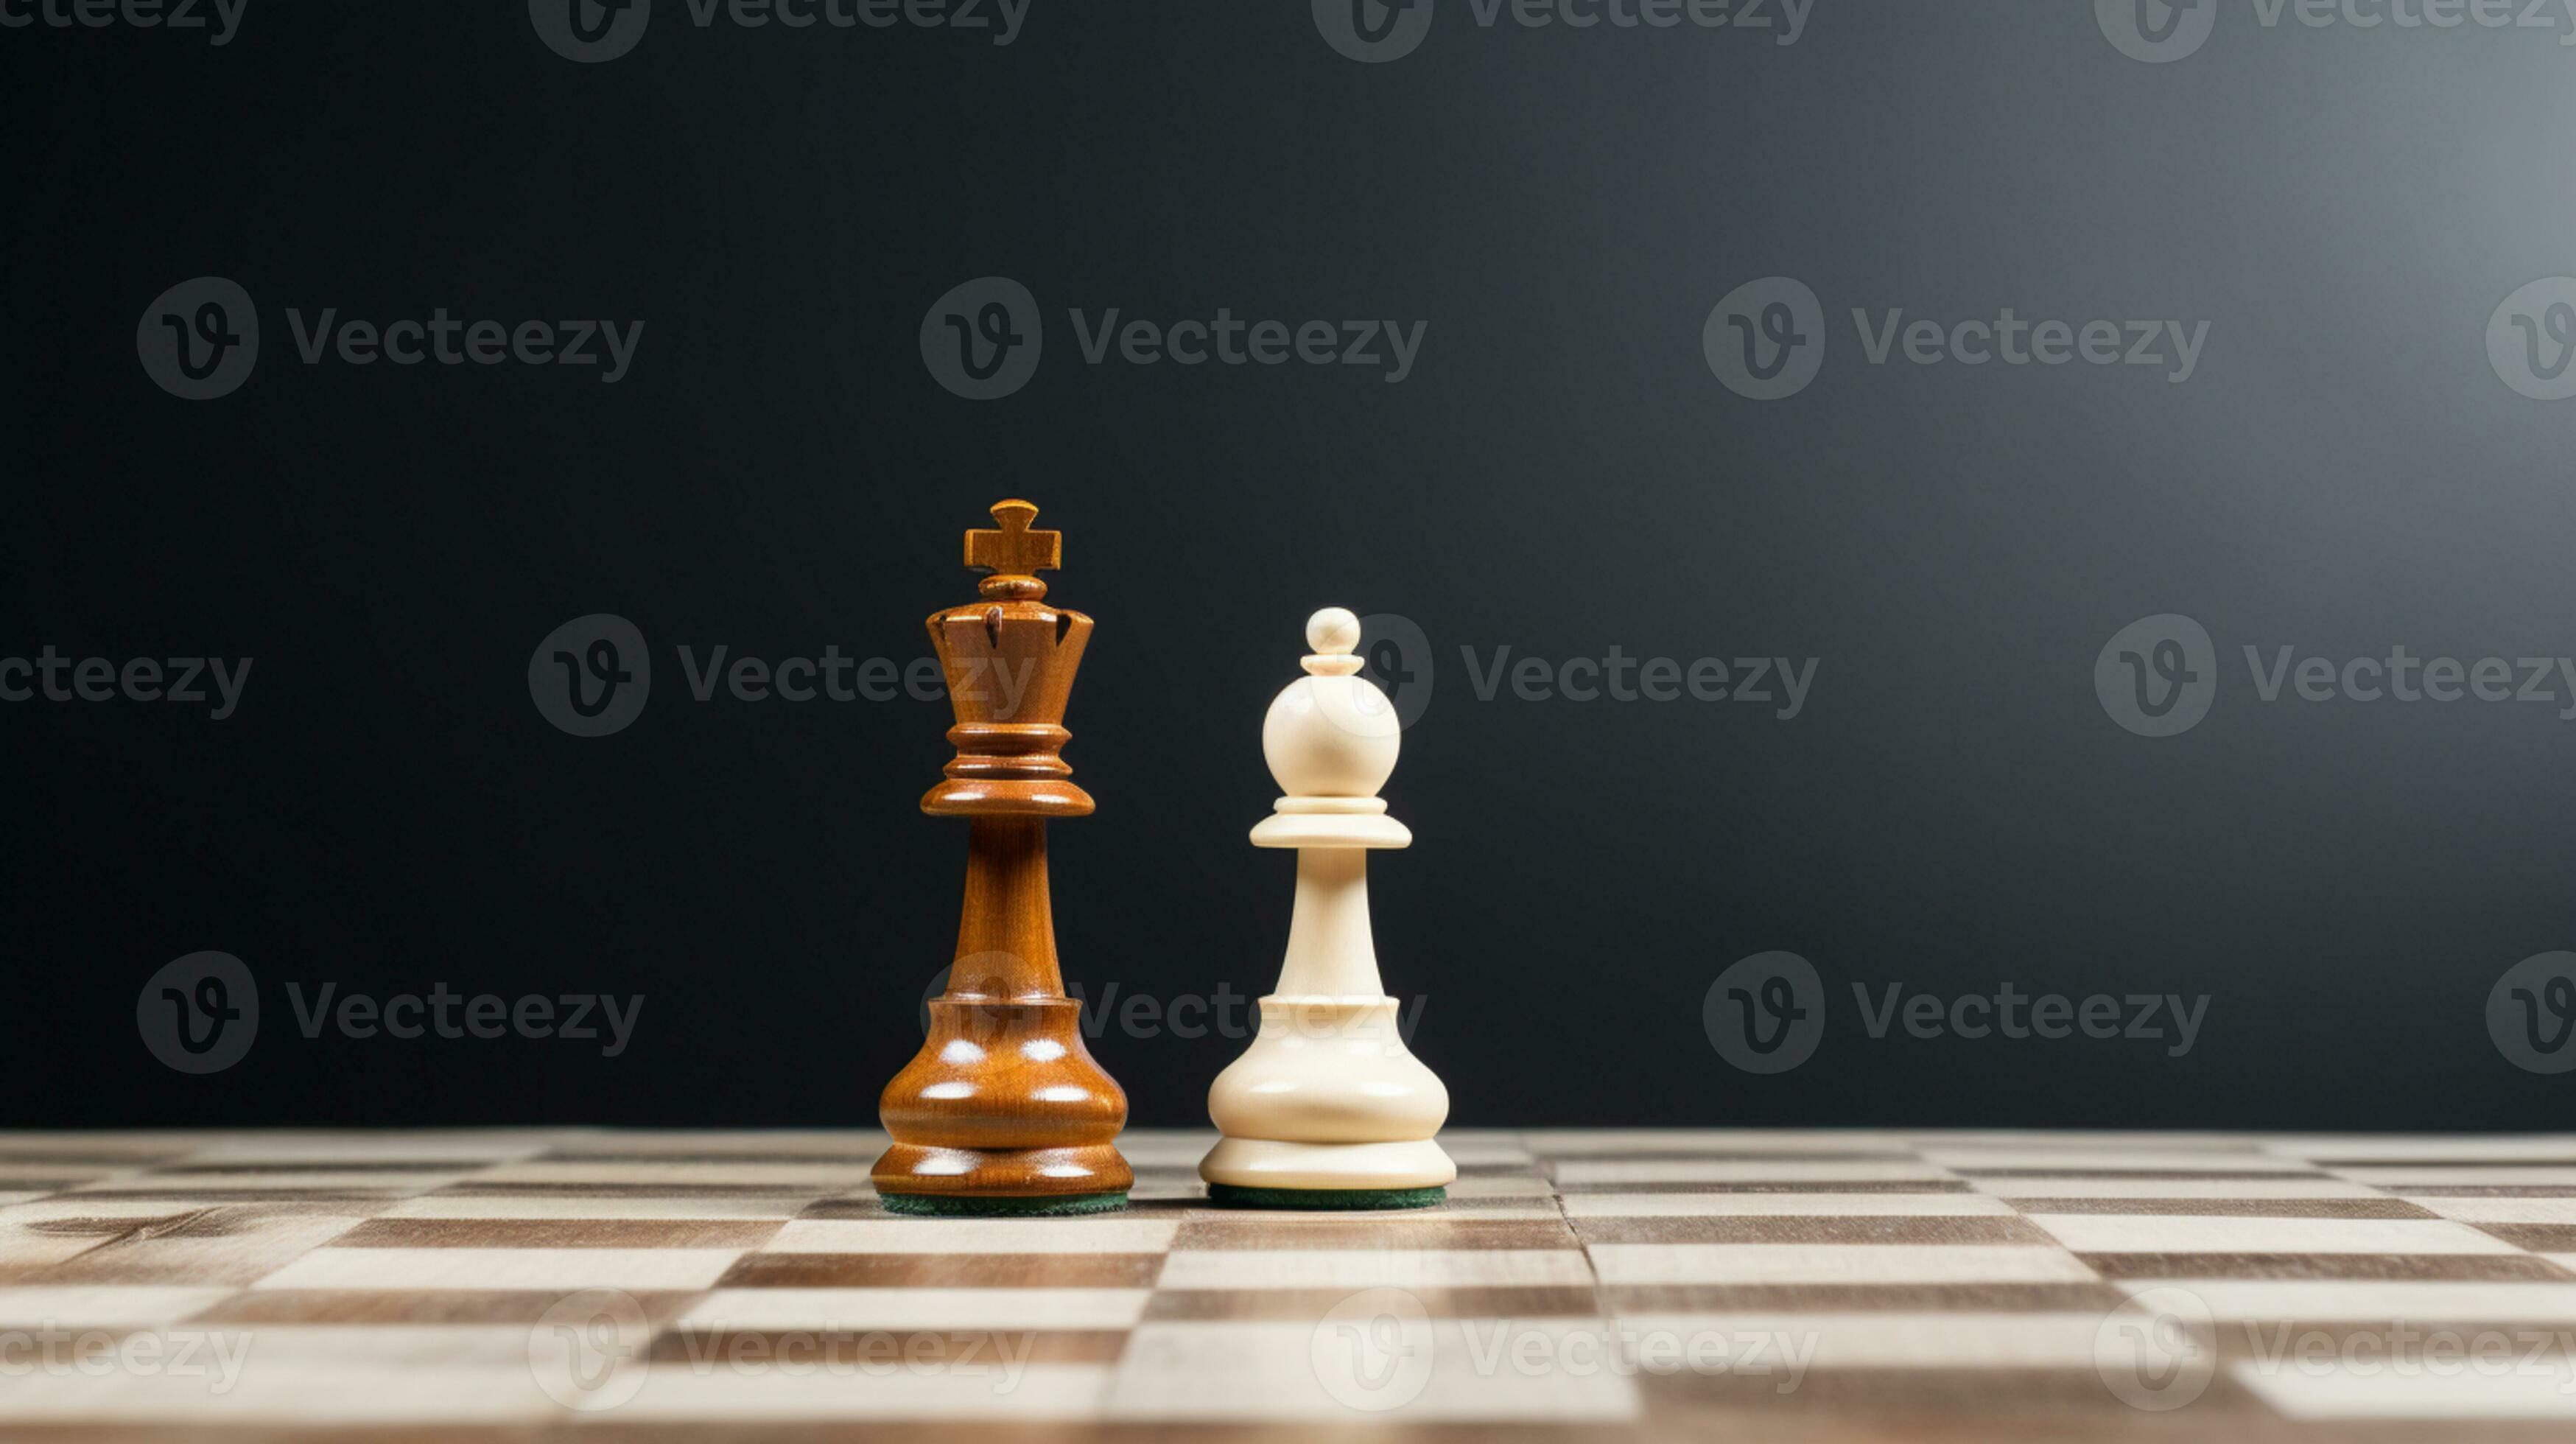 Schach Spiel verwenden Strategien zu Regeln das Planke